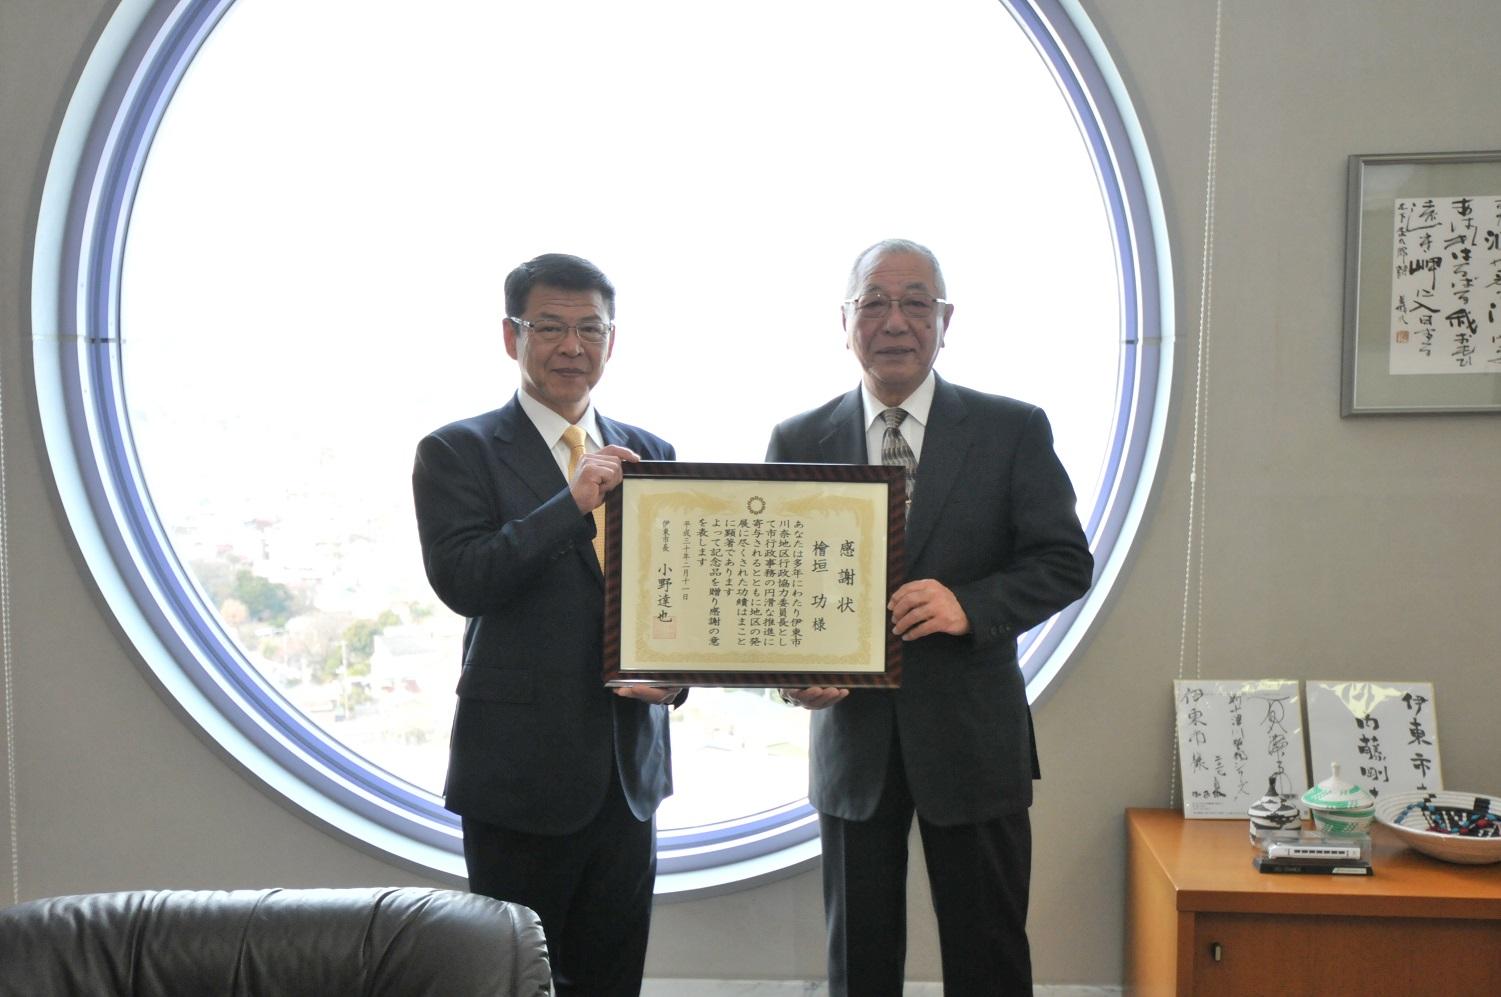 感謝状の贈呈を受けた退任となる川奈区長と伊東市長の写真